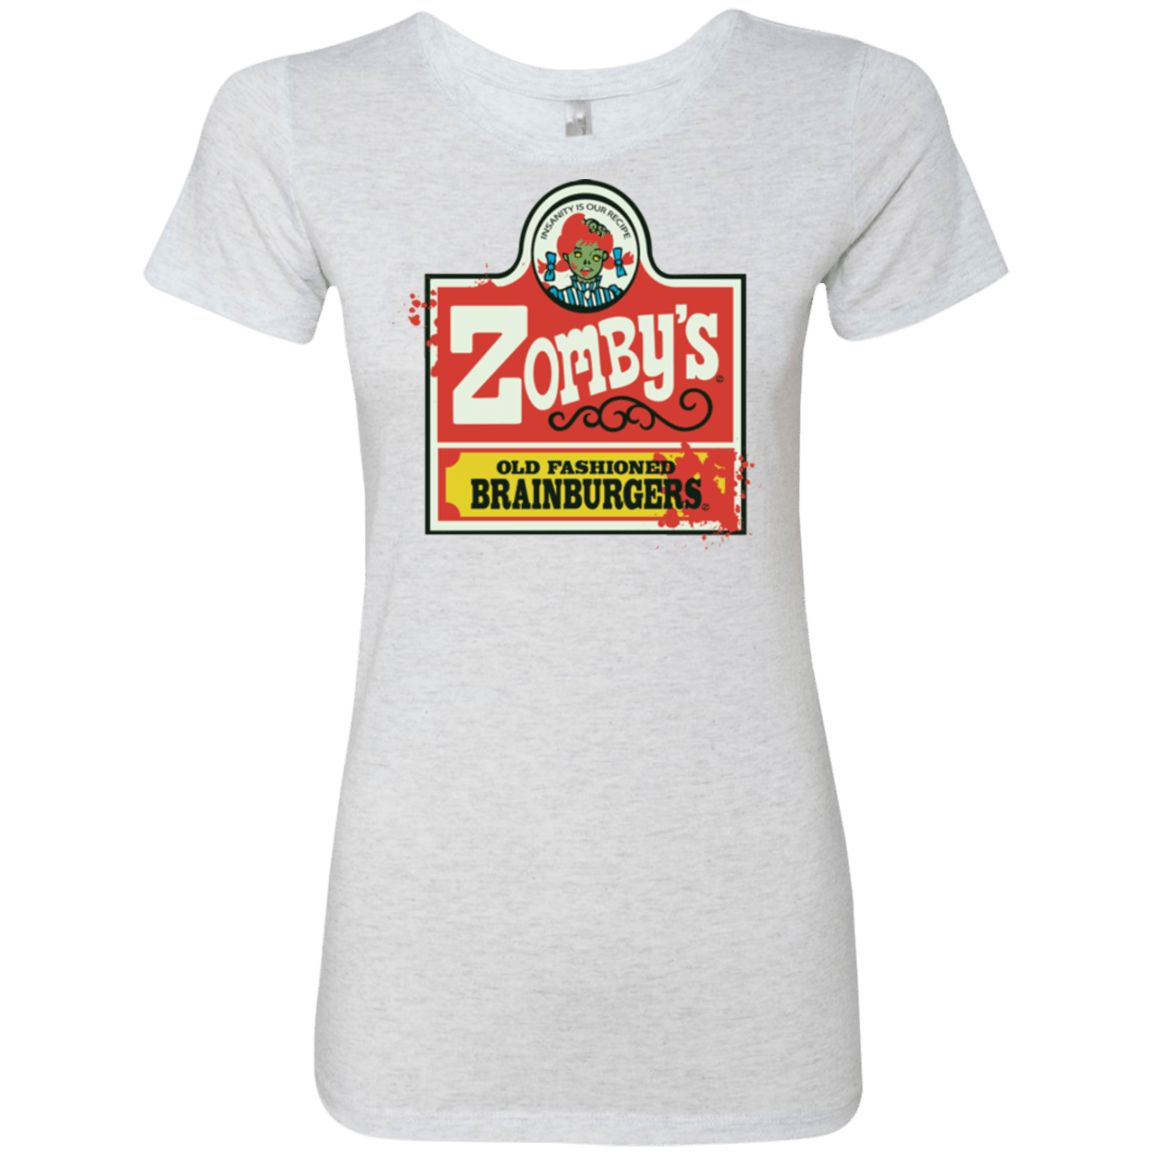 T-Shirts Heather White / Small zombys Women's Triblend T-Shirt